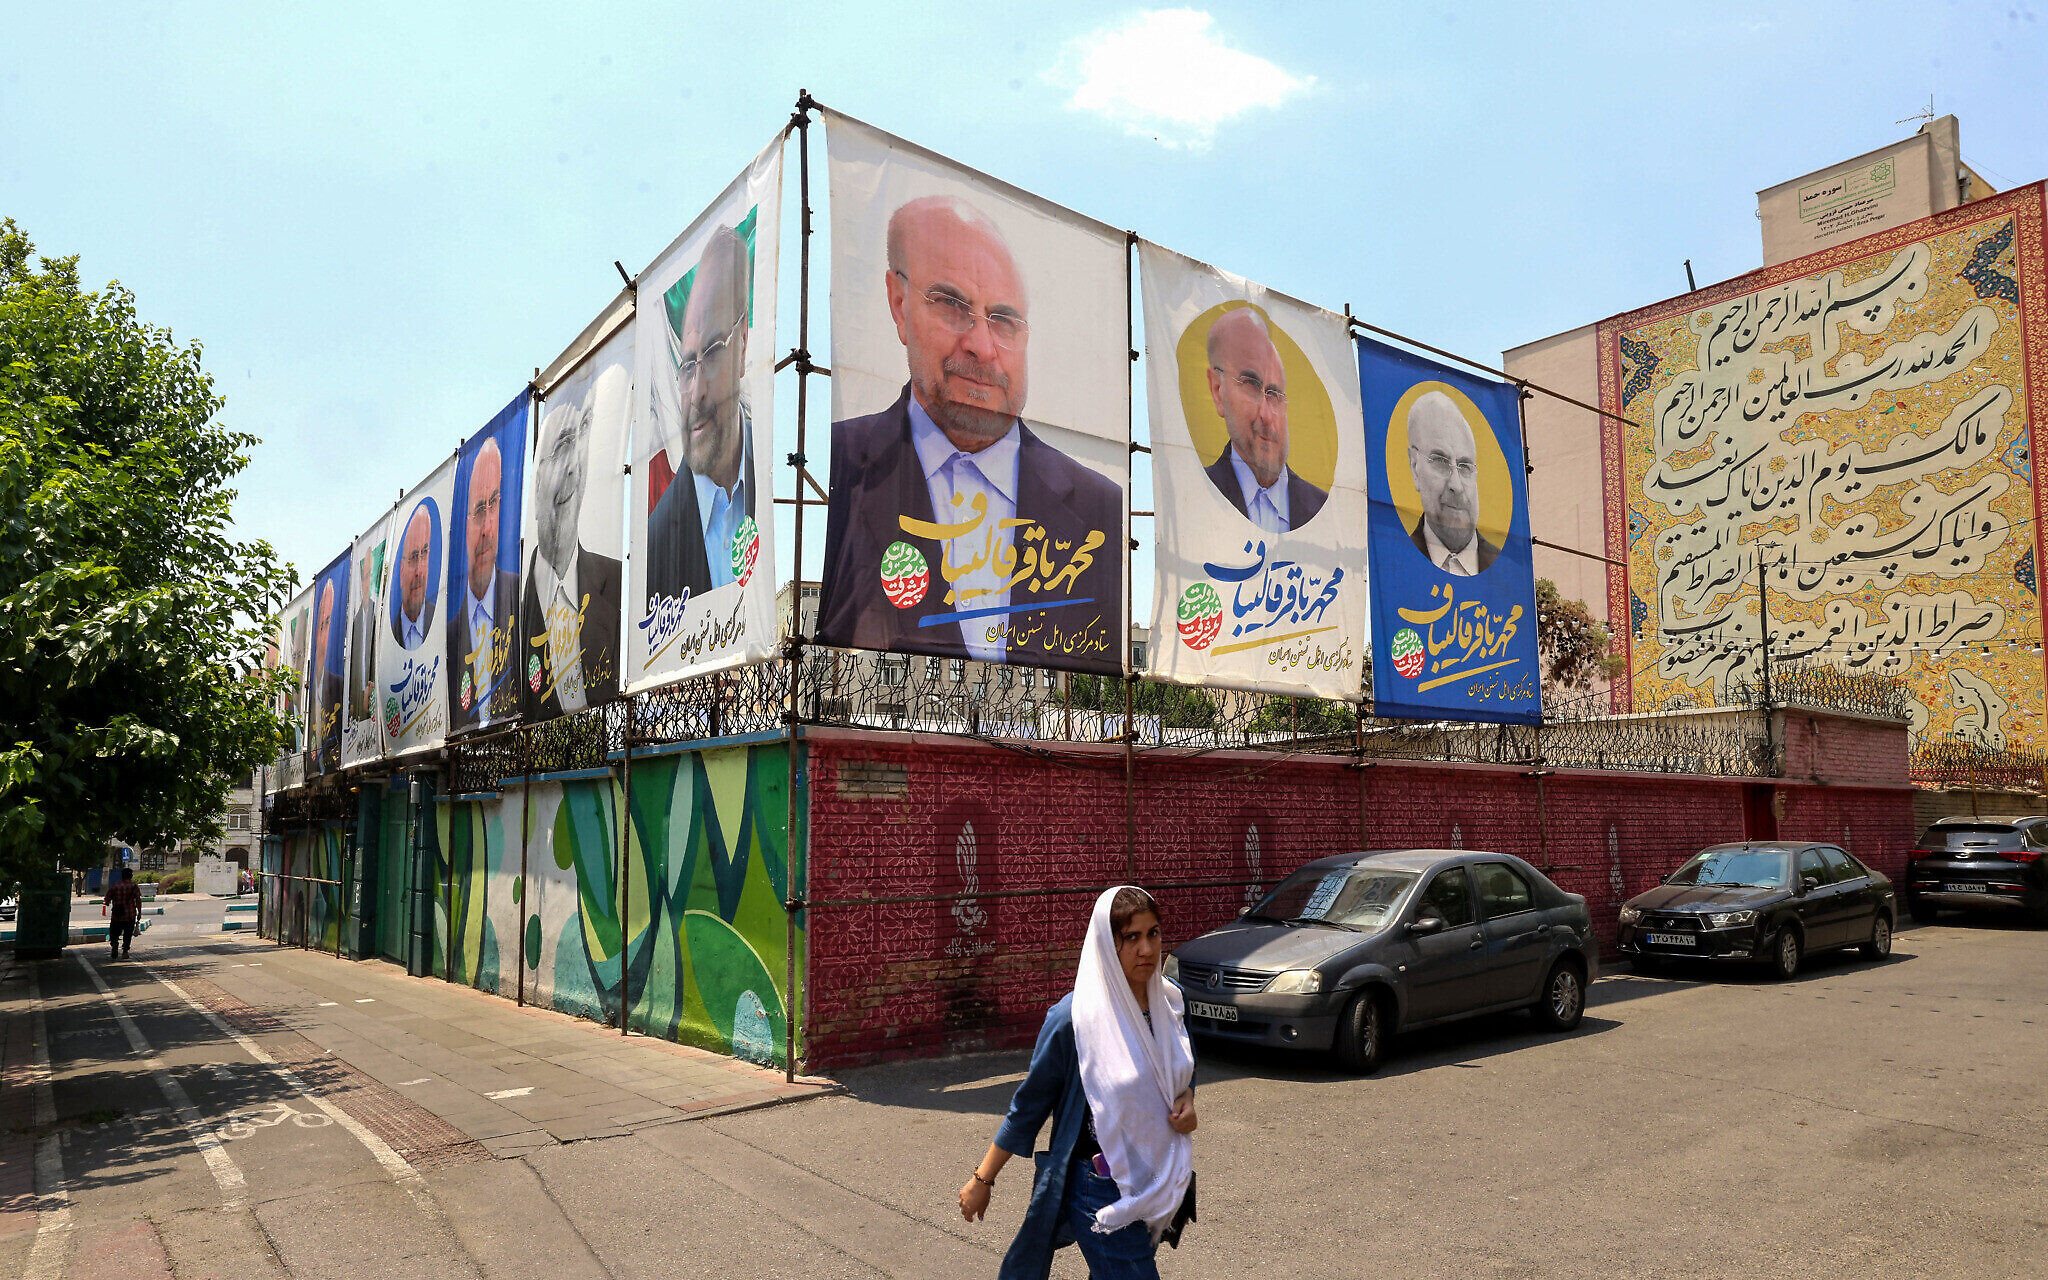 وسائل الإعلام الداخلية في إيران لا تخفي خيبة أملها من مستوى أداء المرشحين للرئاسة الإيرانية